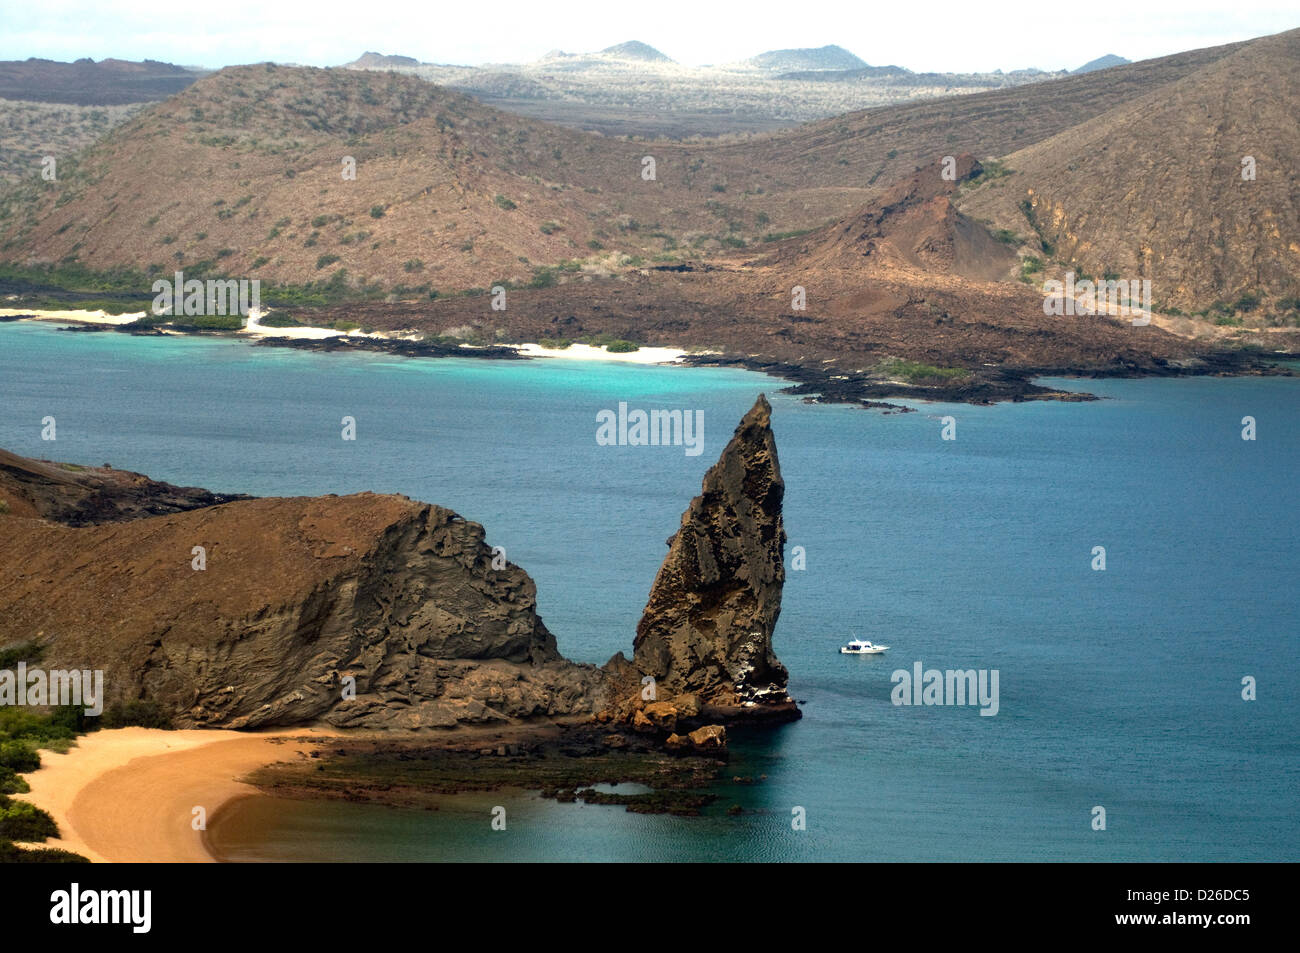 Bartolomé, frente a la isla de Santiago, en las Islas Galápagos, goza de unas vistas magníficas del mar, playa, paisajes, incluso la impresionante roca pináculo Foto de stock